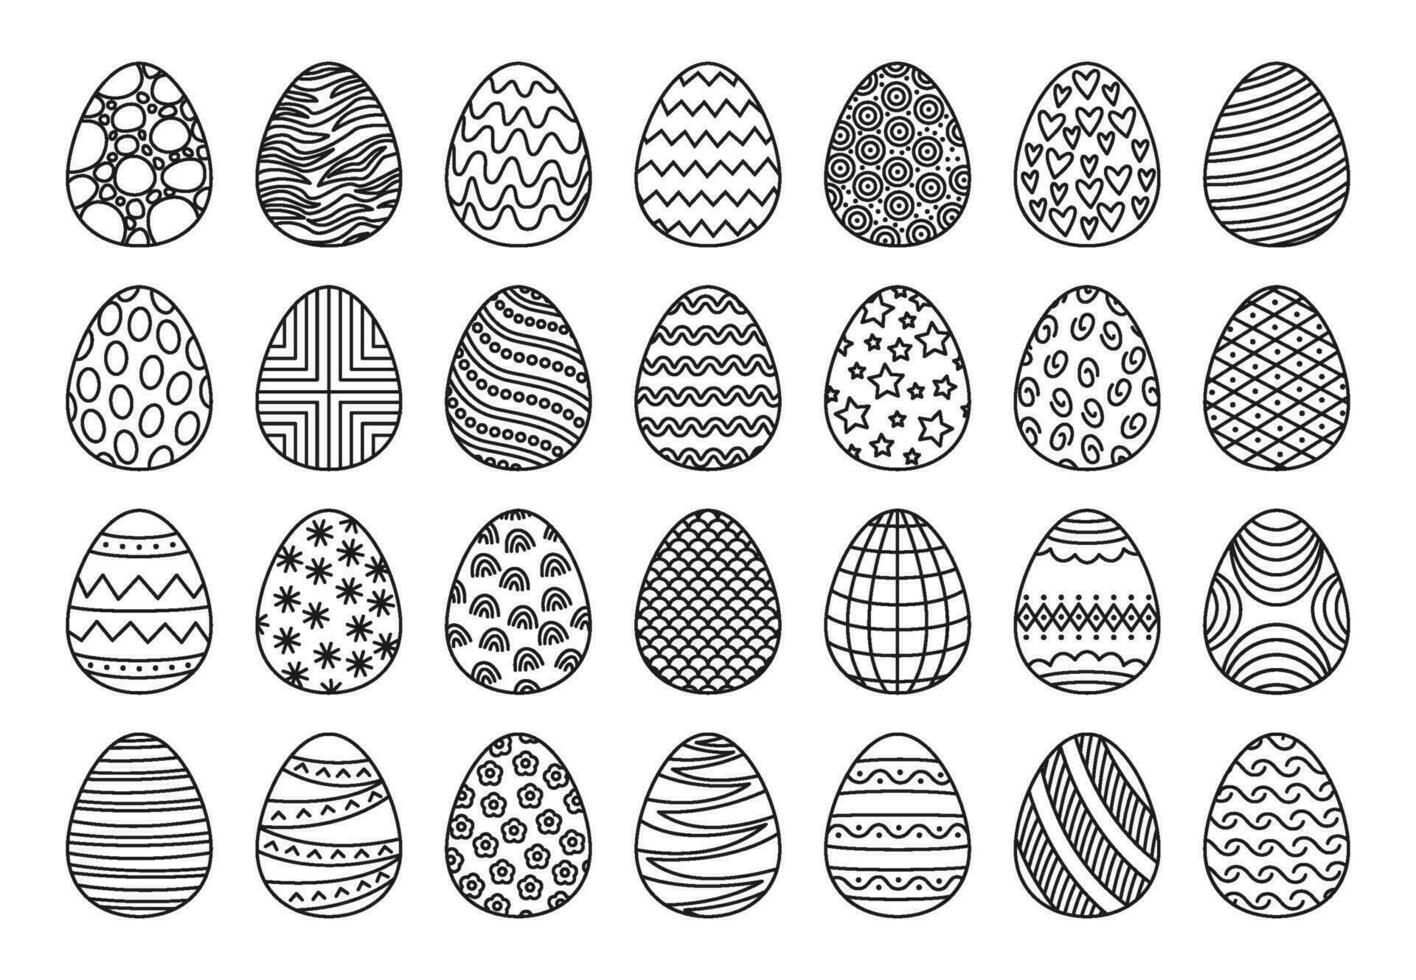 contorno Pascua de Resurrección huevos, linda pintado huevo garabatos con diferente patrones. bosquejo primavera fiesta decoración, Pascua de Resurrección celebracion elementos vector conjunto